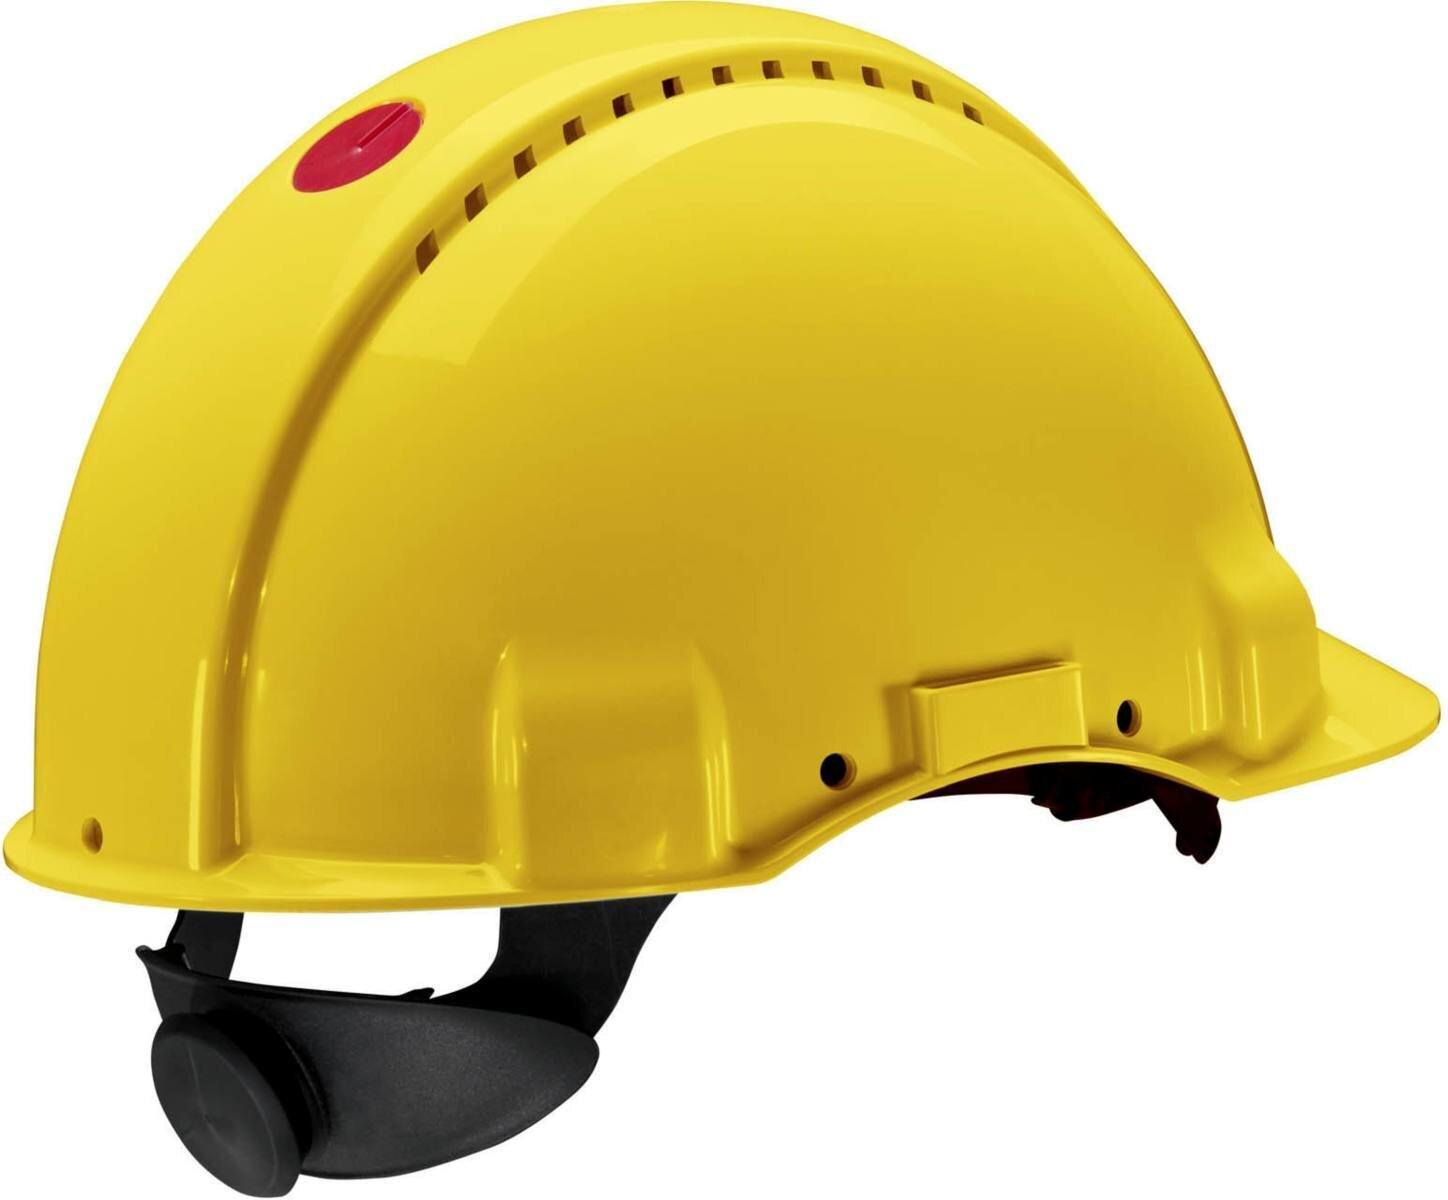 Elmetto di sicurezza 3M G3000 G30NUY giallo, ventilato, con uvicatore, cricchetto e cinturino in plastica per saldatura